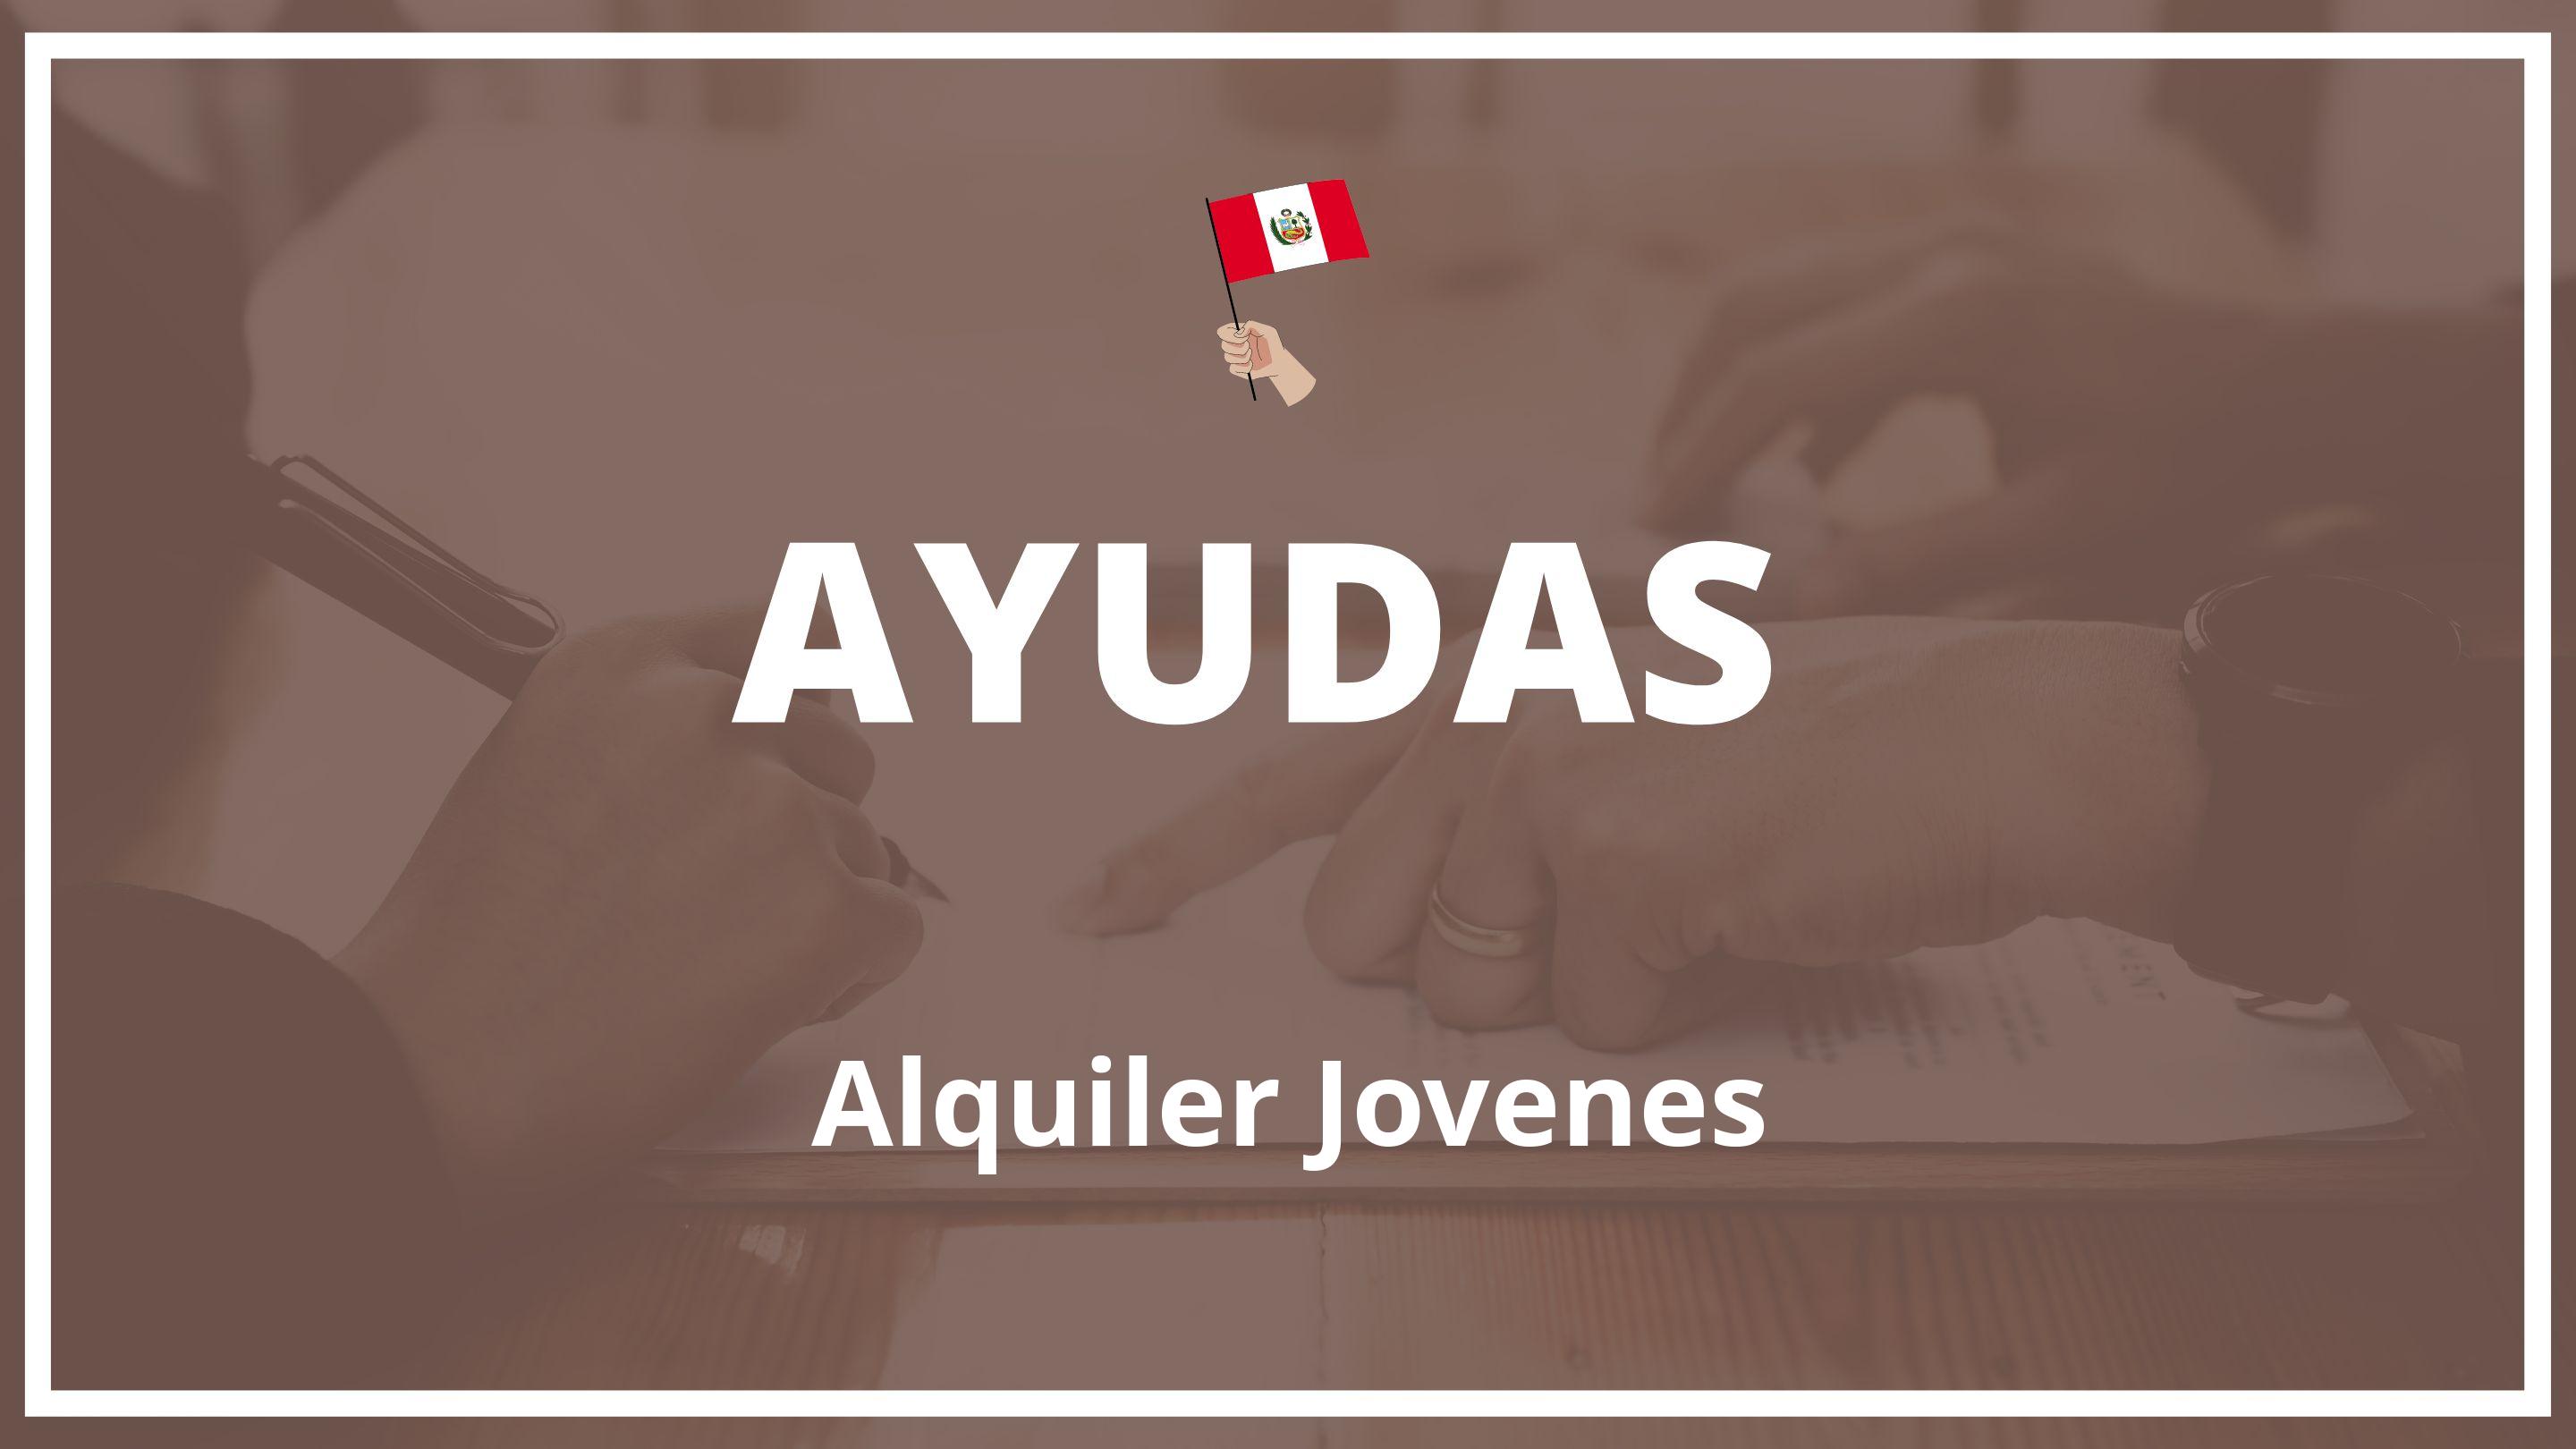 Ayudas para el alquiler jovenes Peru